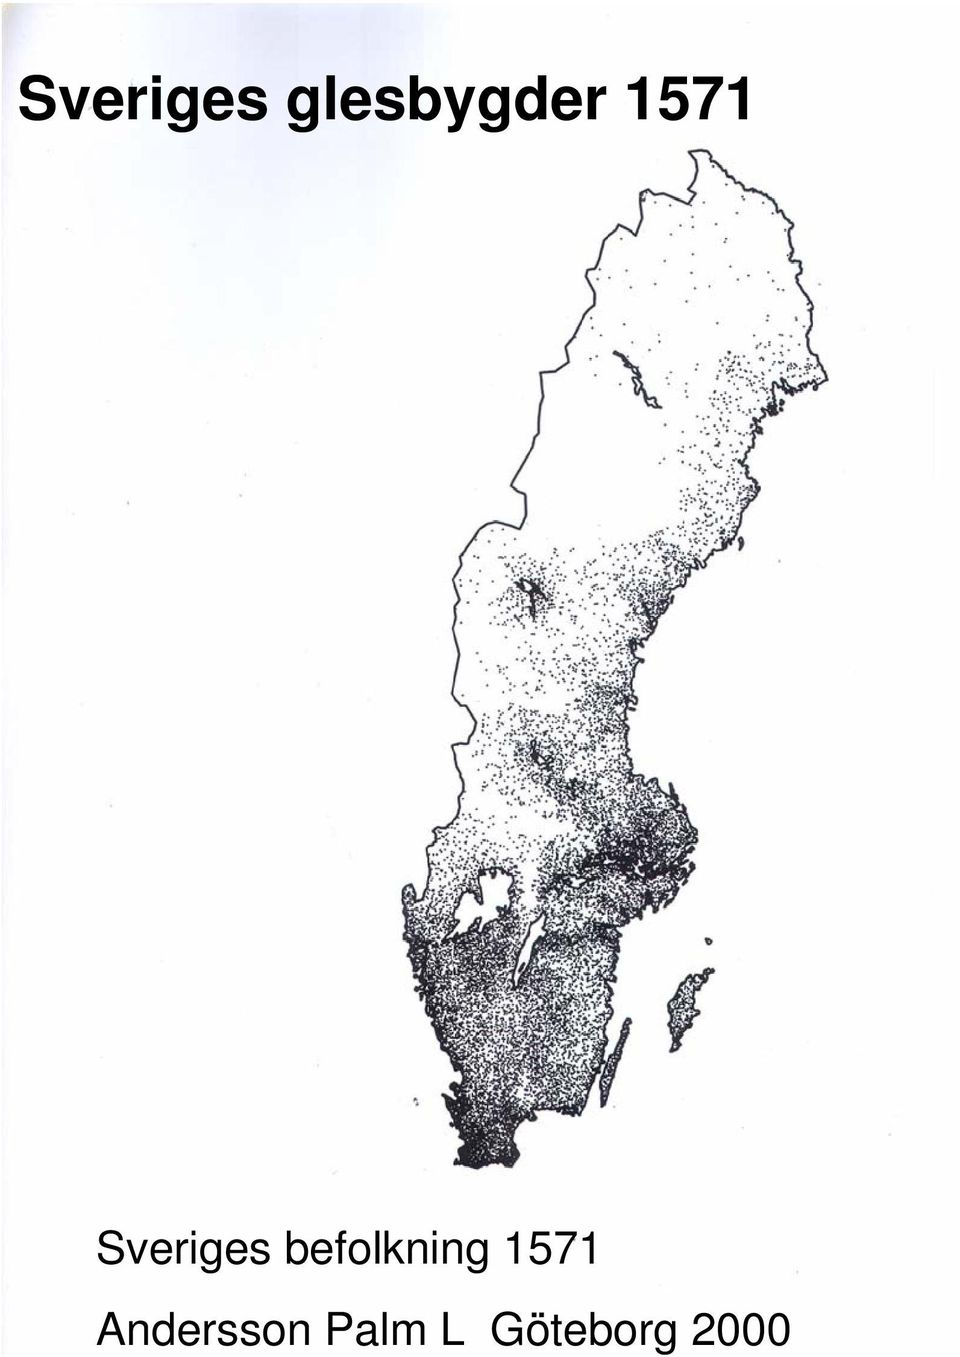 Sveriges glesbygder